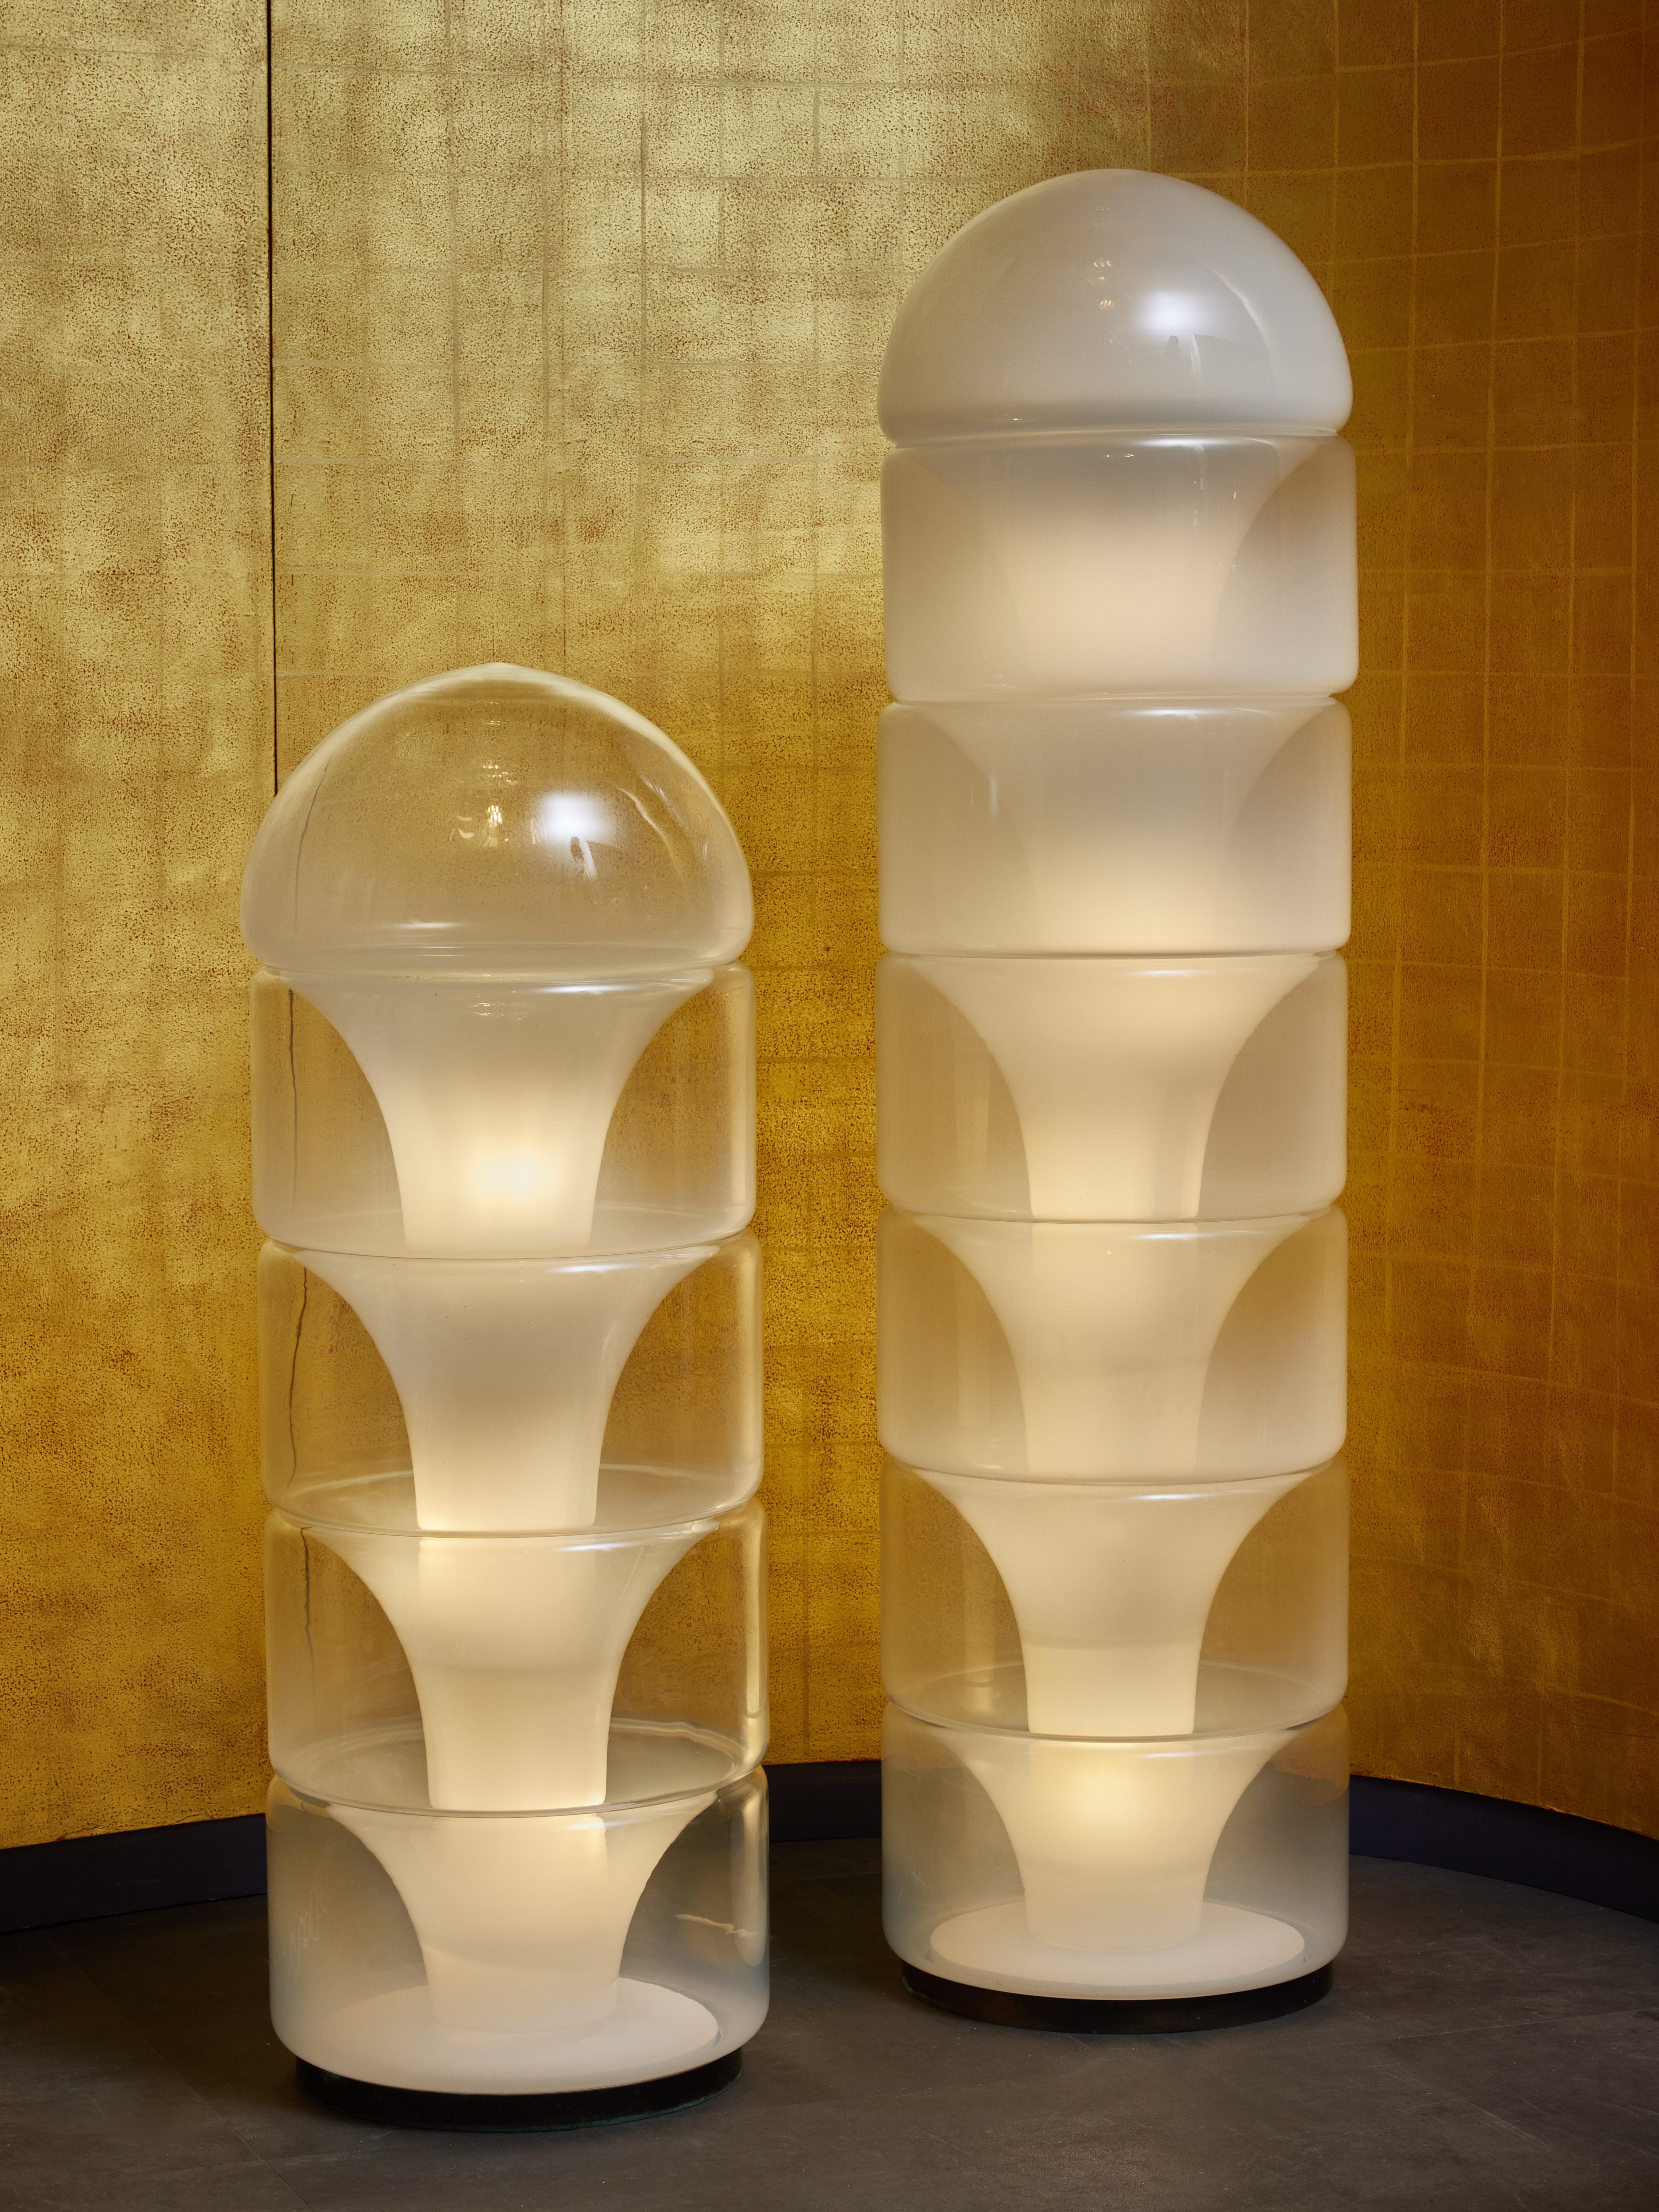 Lampadaire en verre Sfumato conçu par Carlo Nason pour Mazzega.

Cette pièce (illustrée à droite) est composée d'une structure intérieure en métal sur laquelle sont empilés sept éléments en verre de Murano qui diffusent la lumière.